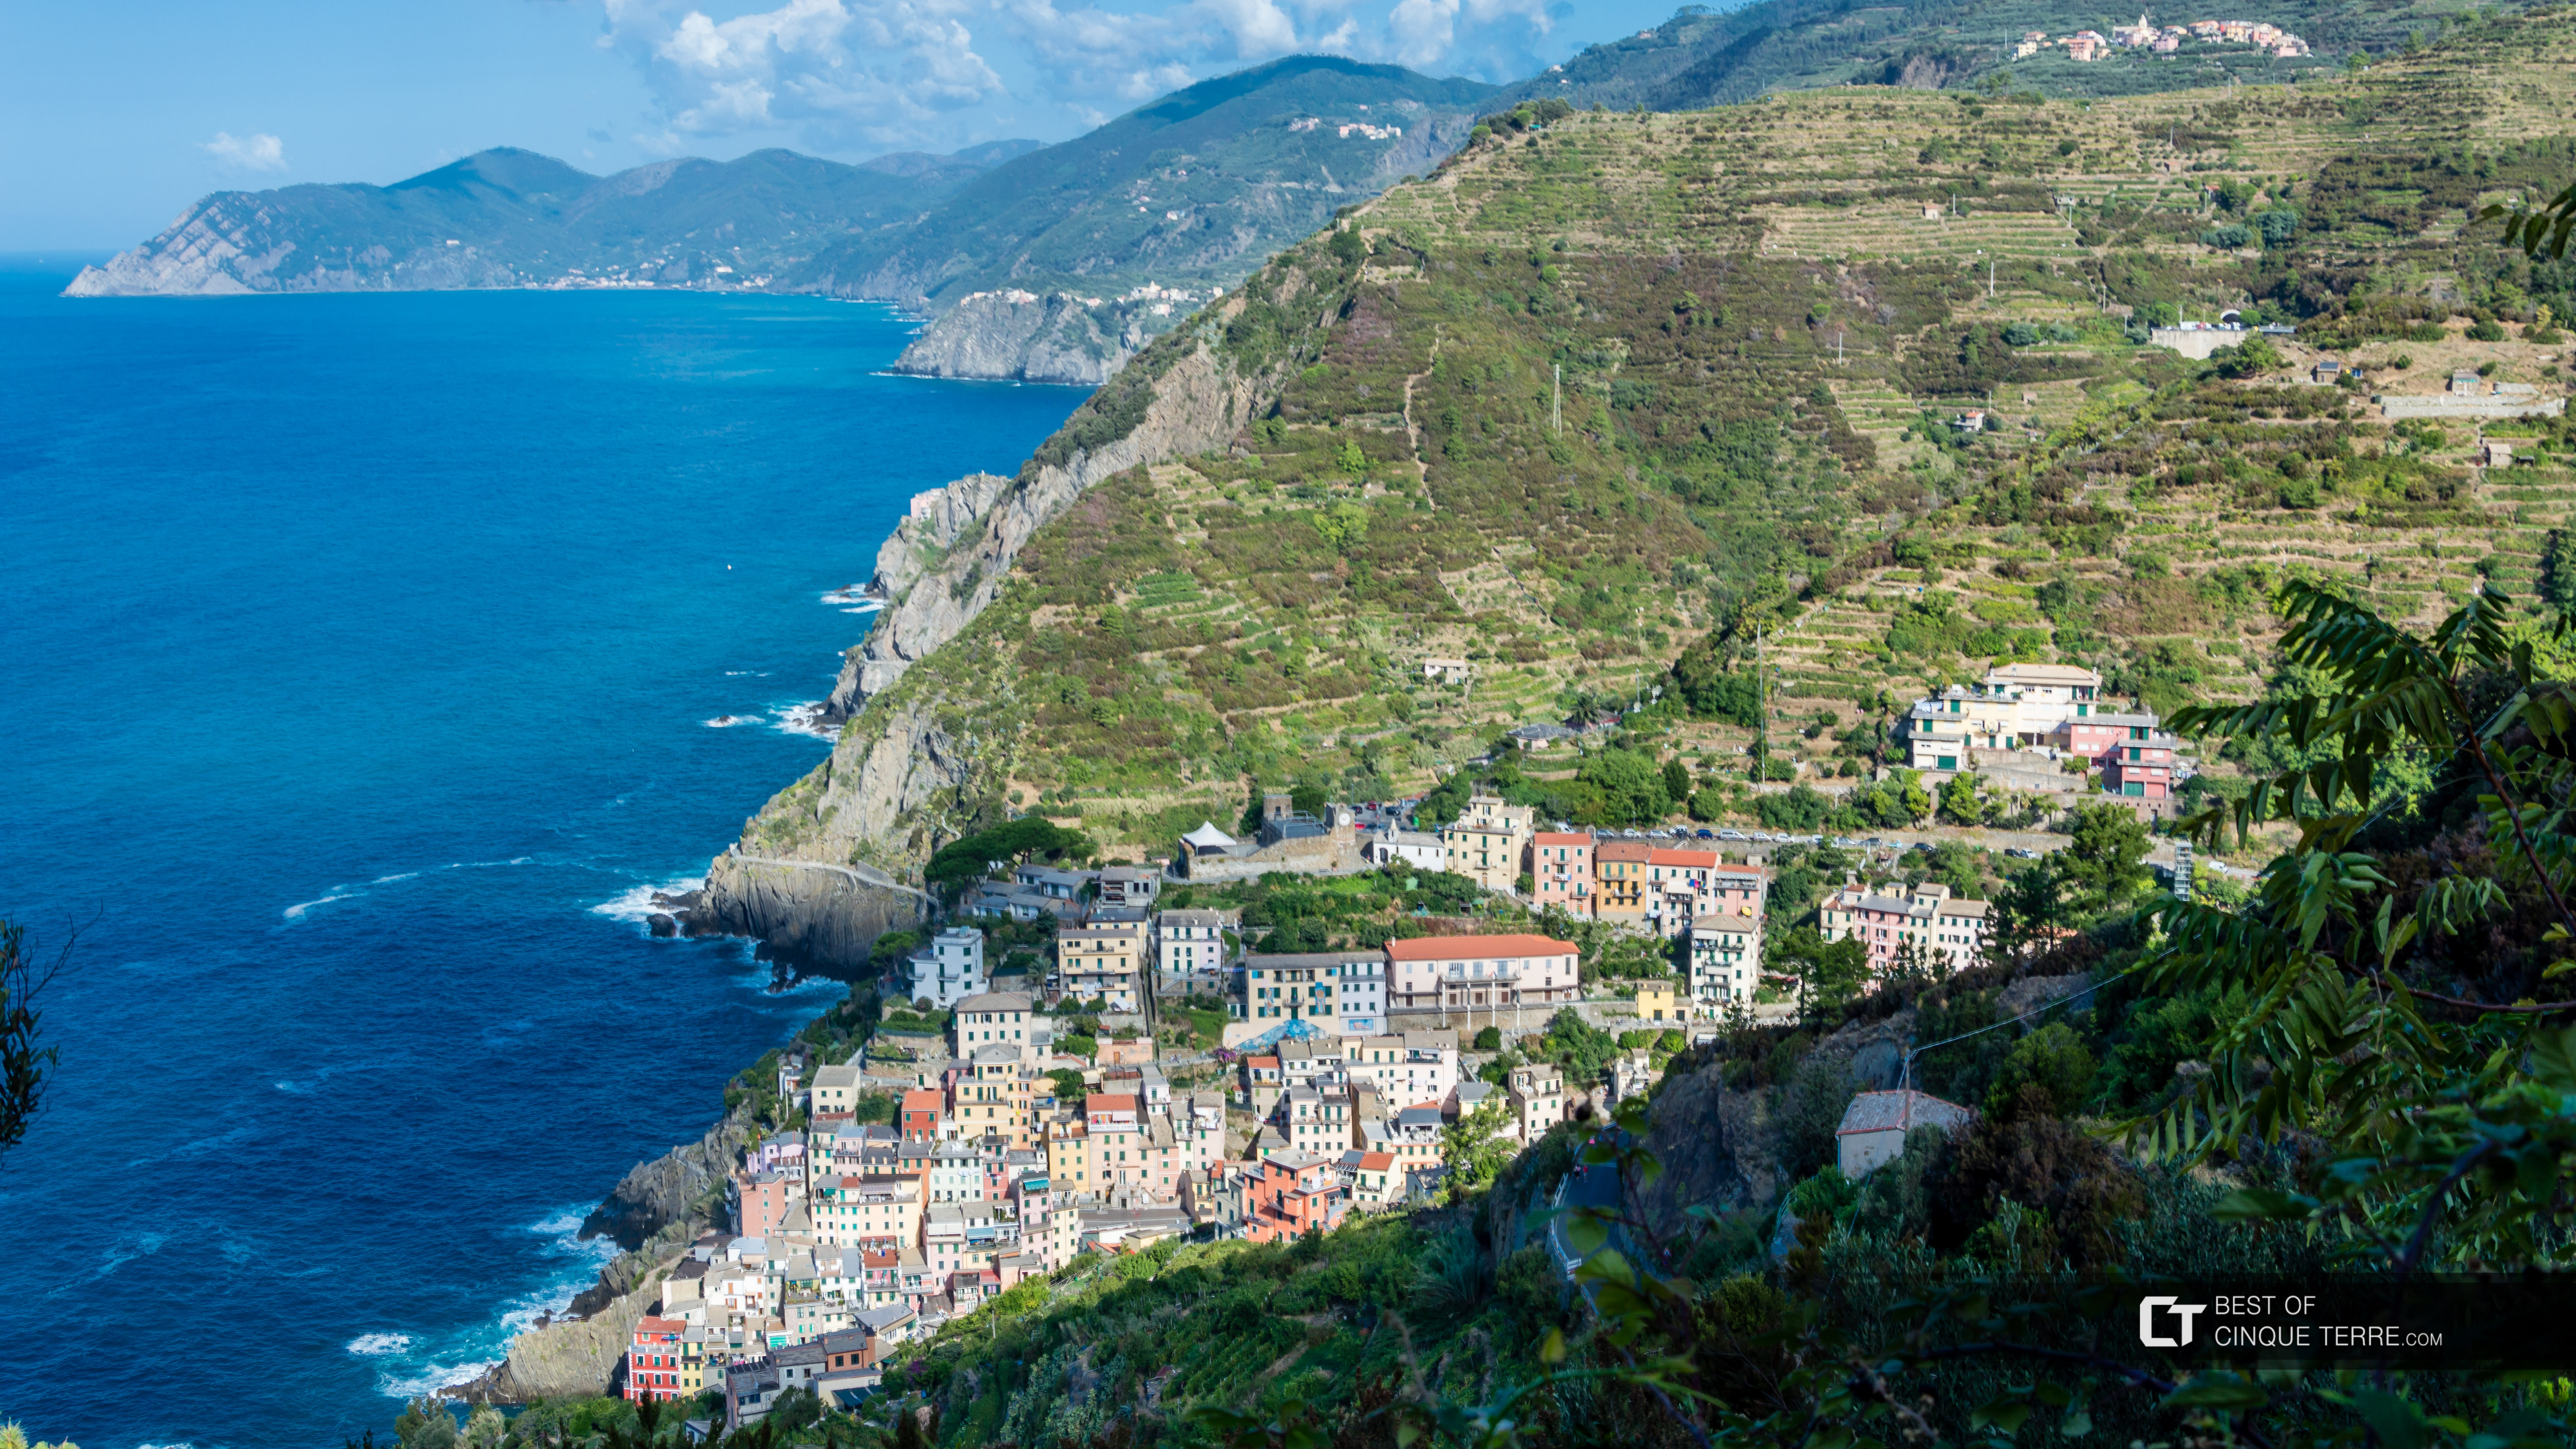 View of the village from the trail to the Montenero Sanctuary, Riomaggiore, Cinque Terre, Italy